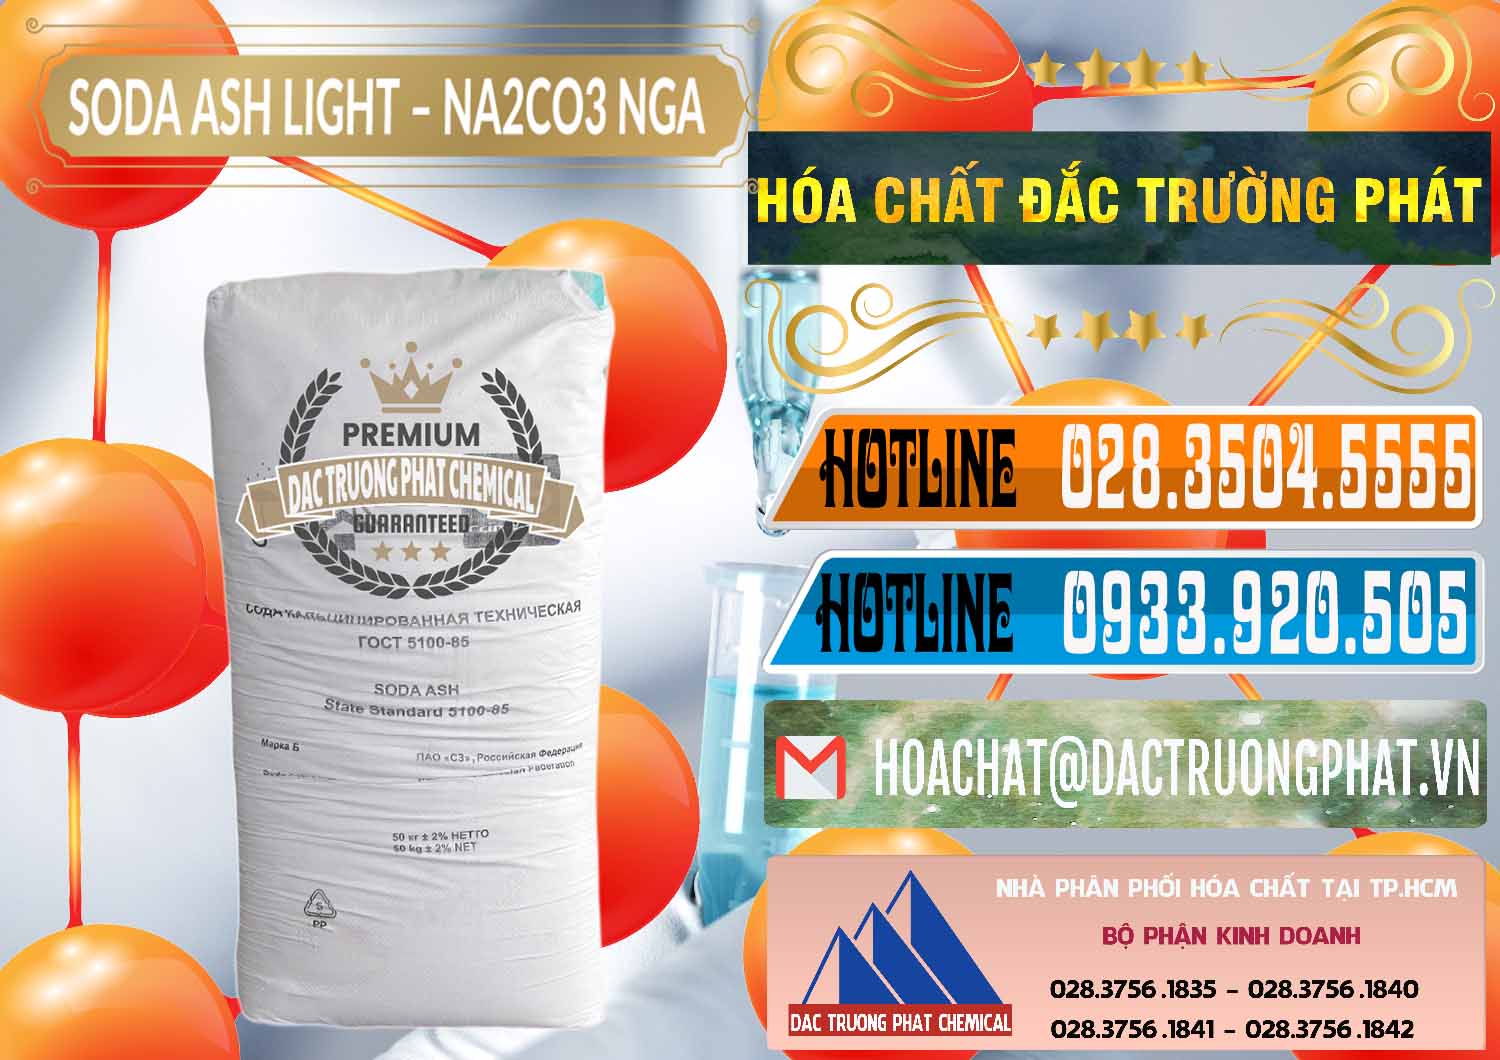 Nơi nhập khẩu - bán Soda Ash Light - NA2CO3 Nga Russia - 0128 - Công ty chuyên nhập khẩu & phân phối hóa chất tại TP.HCM - stmp.net